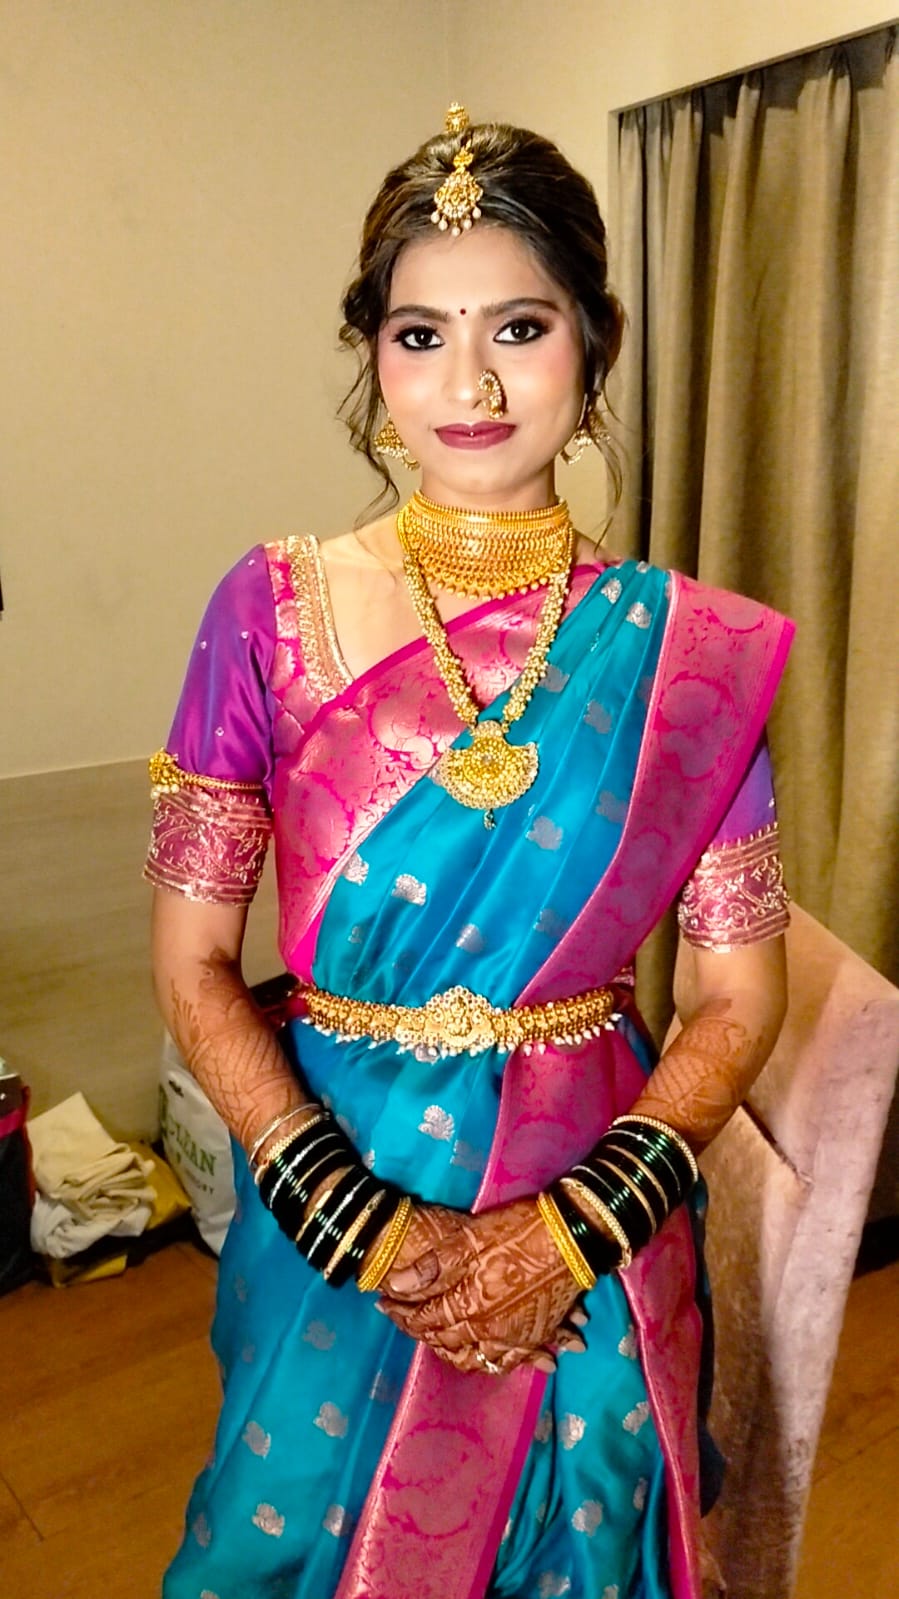 reshma-shetty-makeup-artist-mumbai